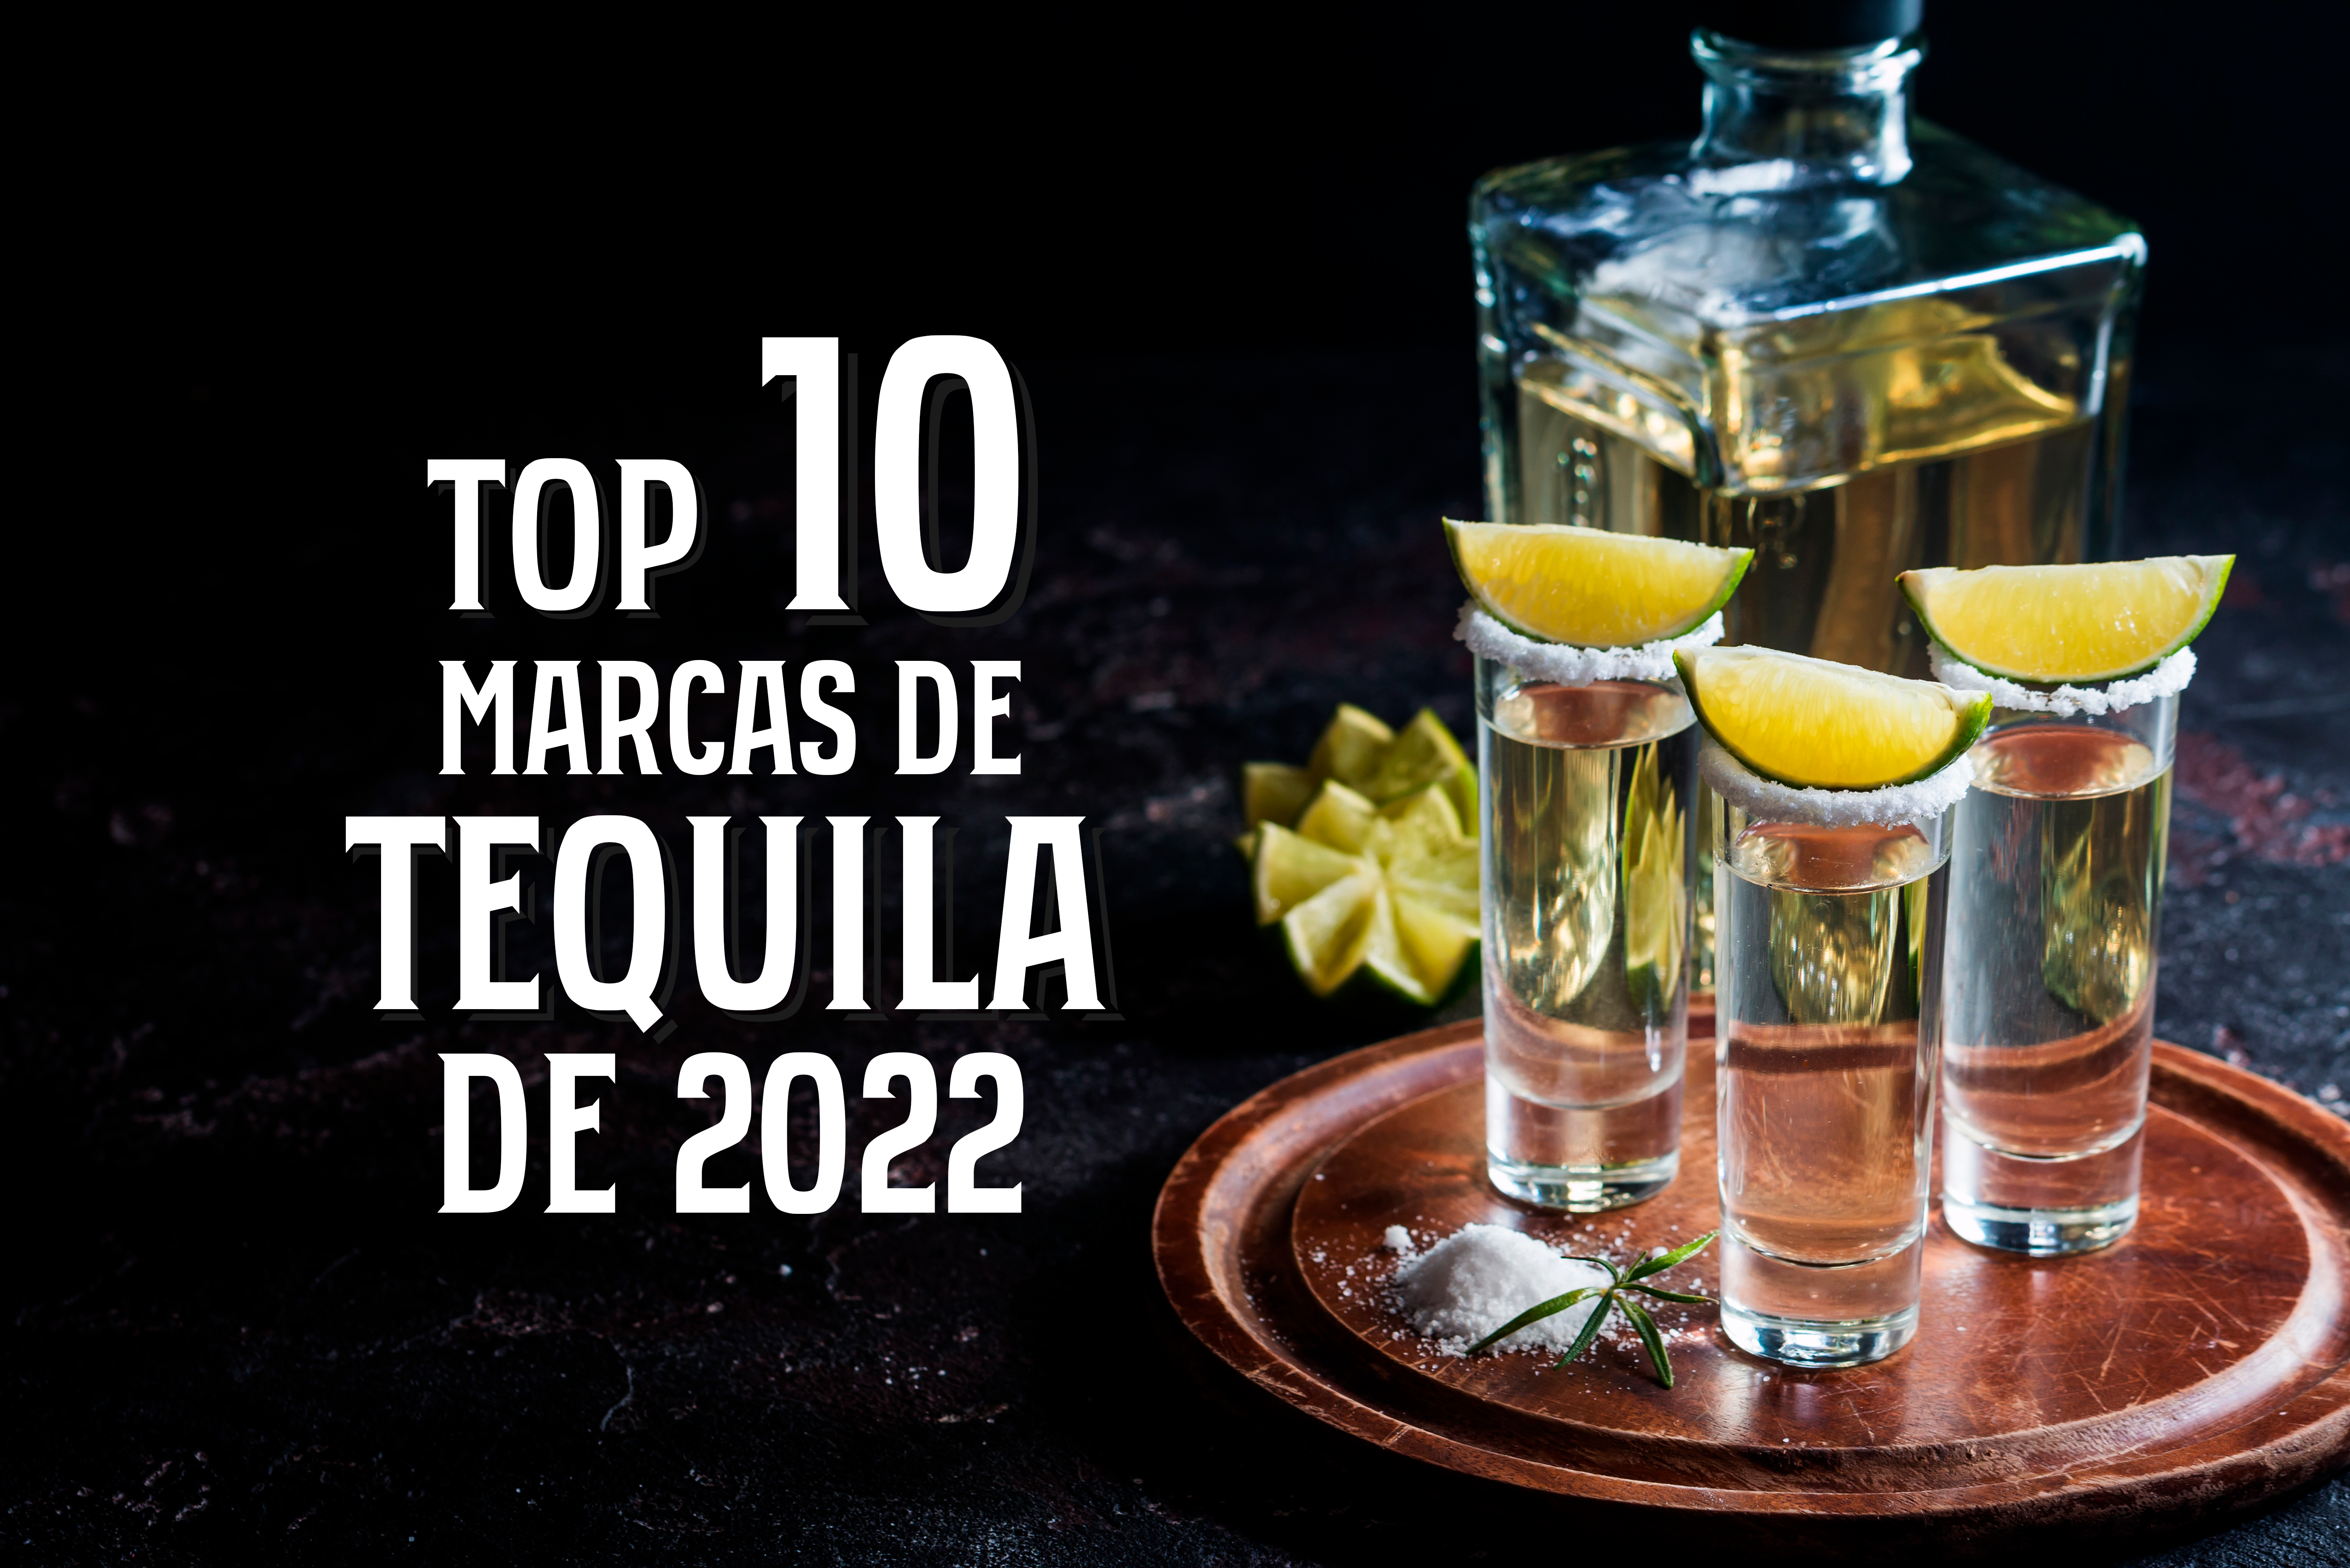 Top 10 Marcas de Tequila de 2022